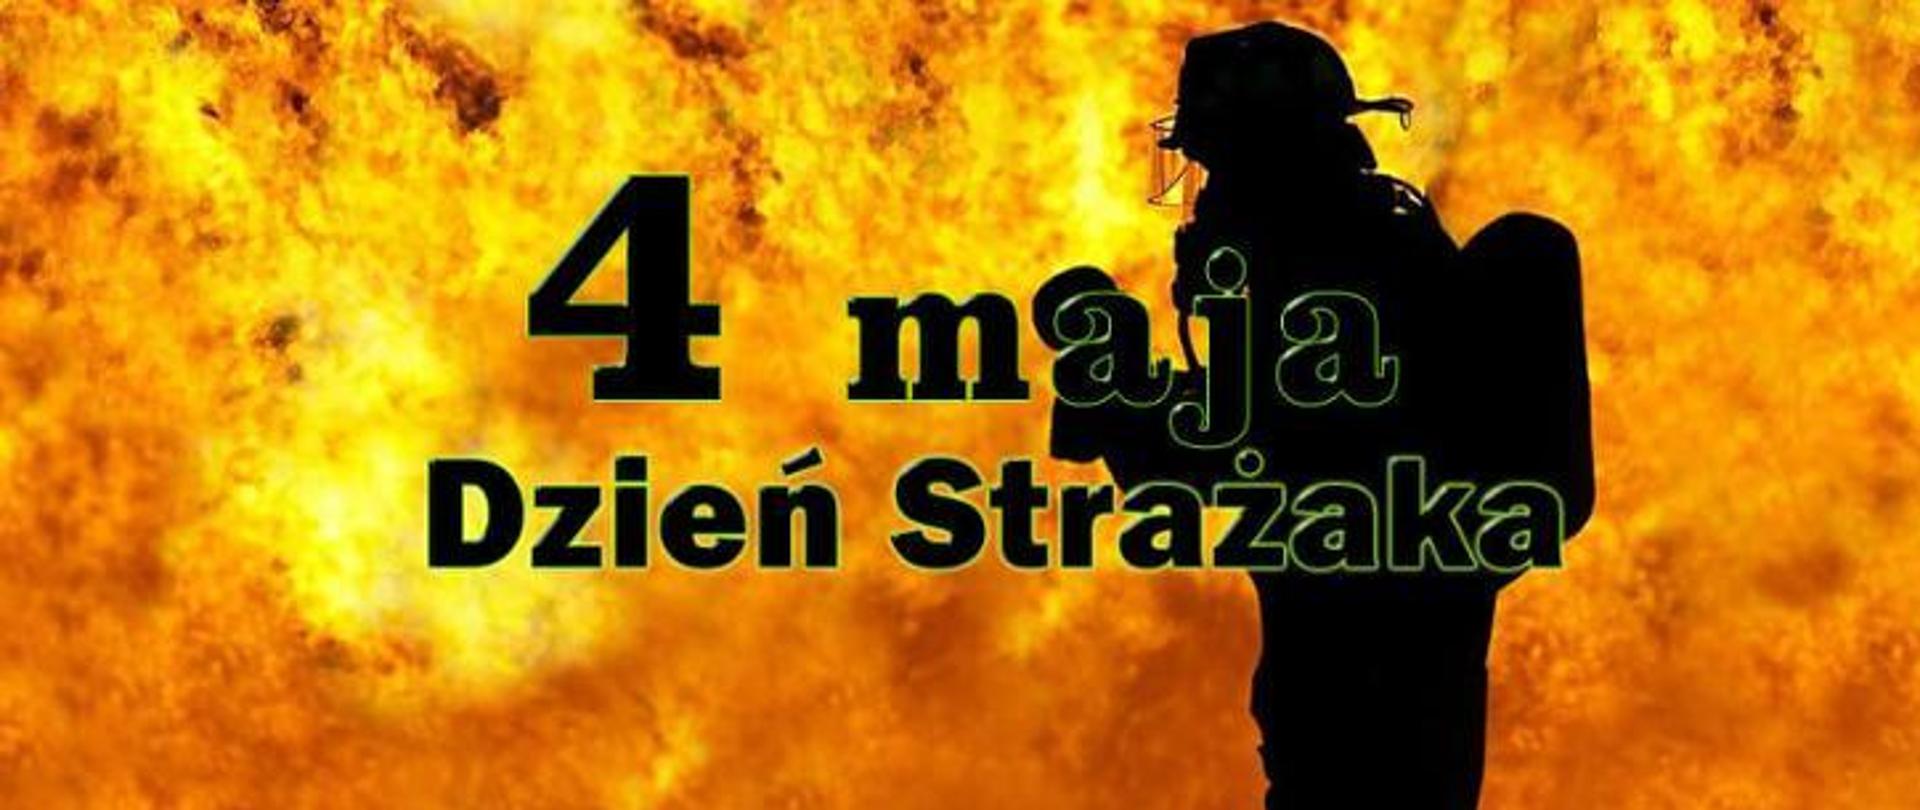 Napis 4 maja Dzień Strażaka, w tle płomienie oraz strażak w ubraniu specjalnym oraz sprzęcie ochrony układu oddechowego